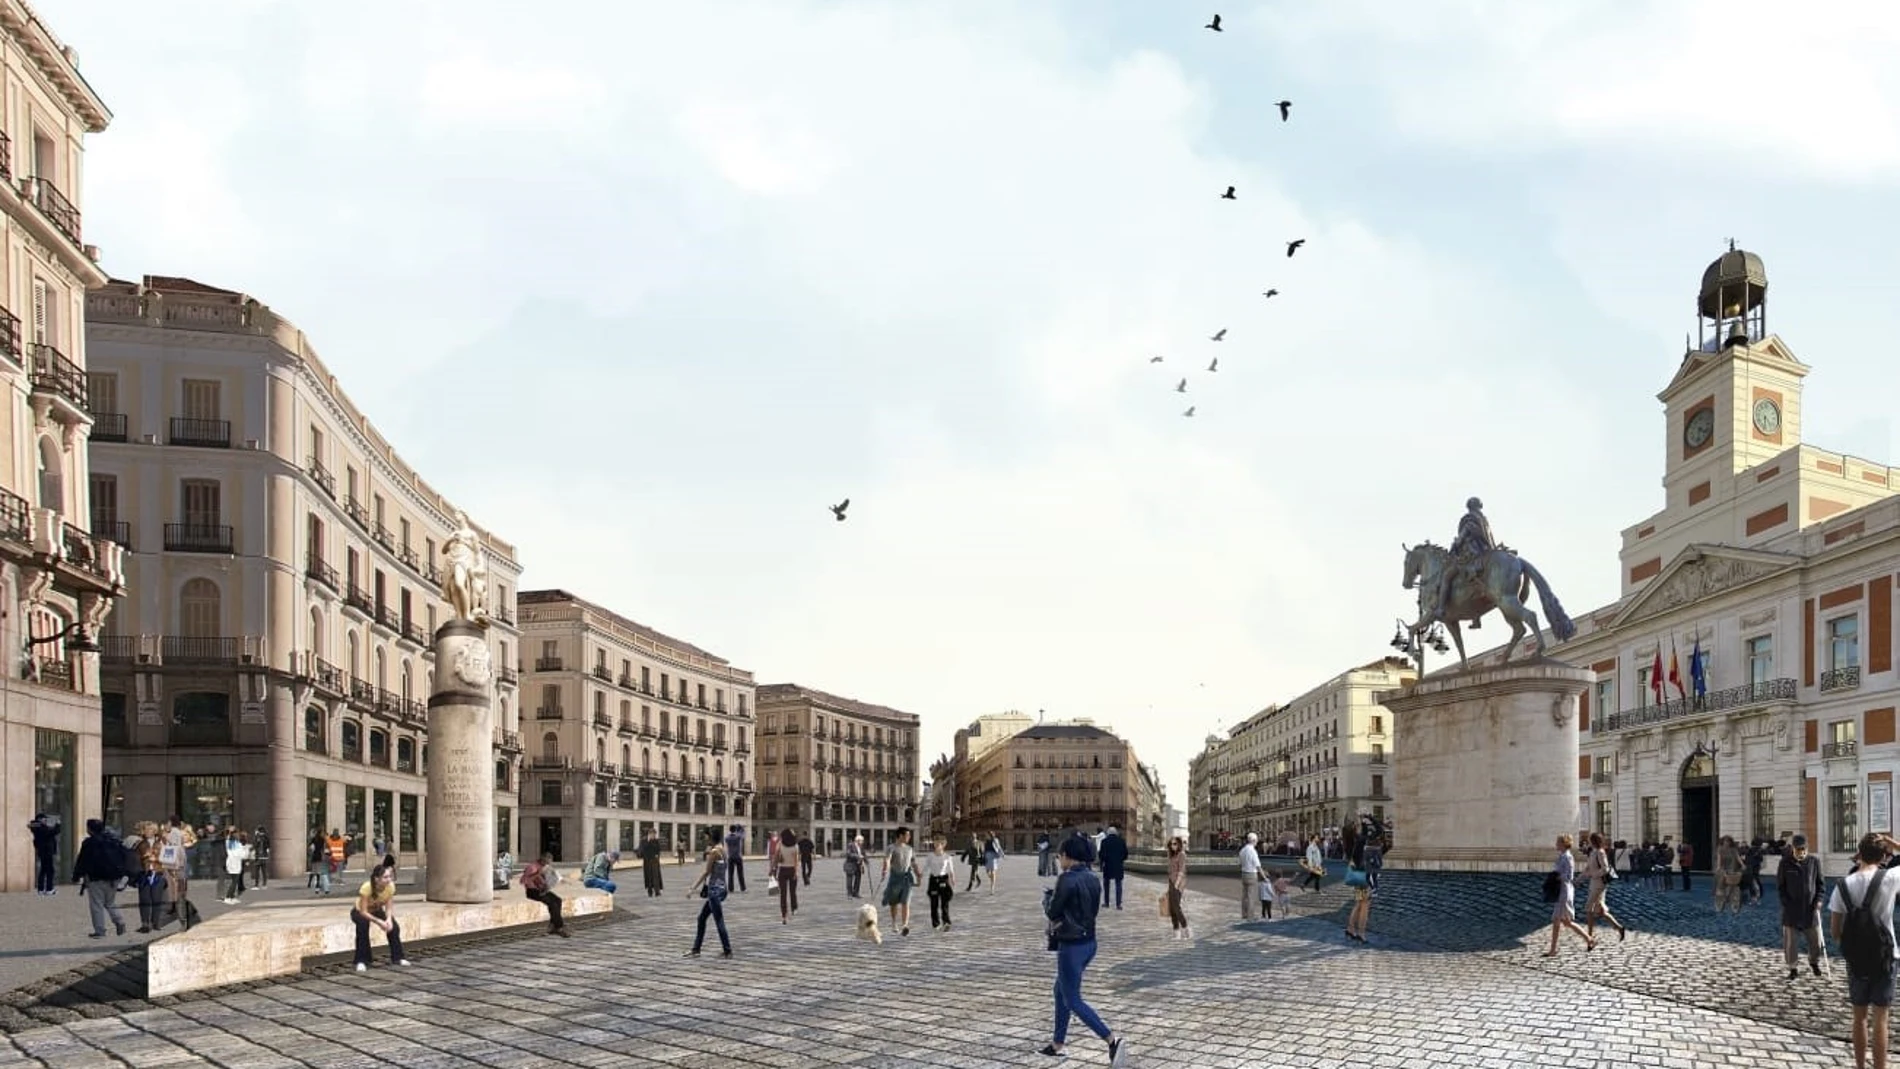 AMP.- La nueva Puerta del Sol eliminará elementos "antiestéticos", lucirá una fuente en el centro y orillará estatuas